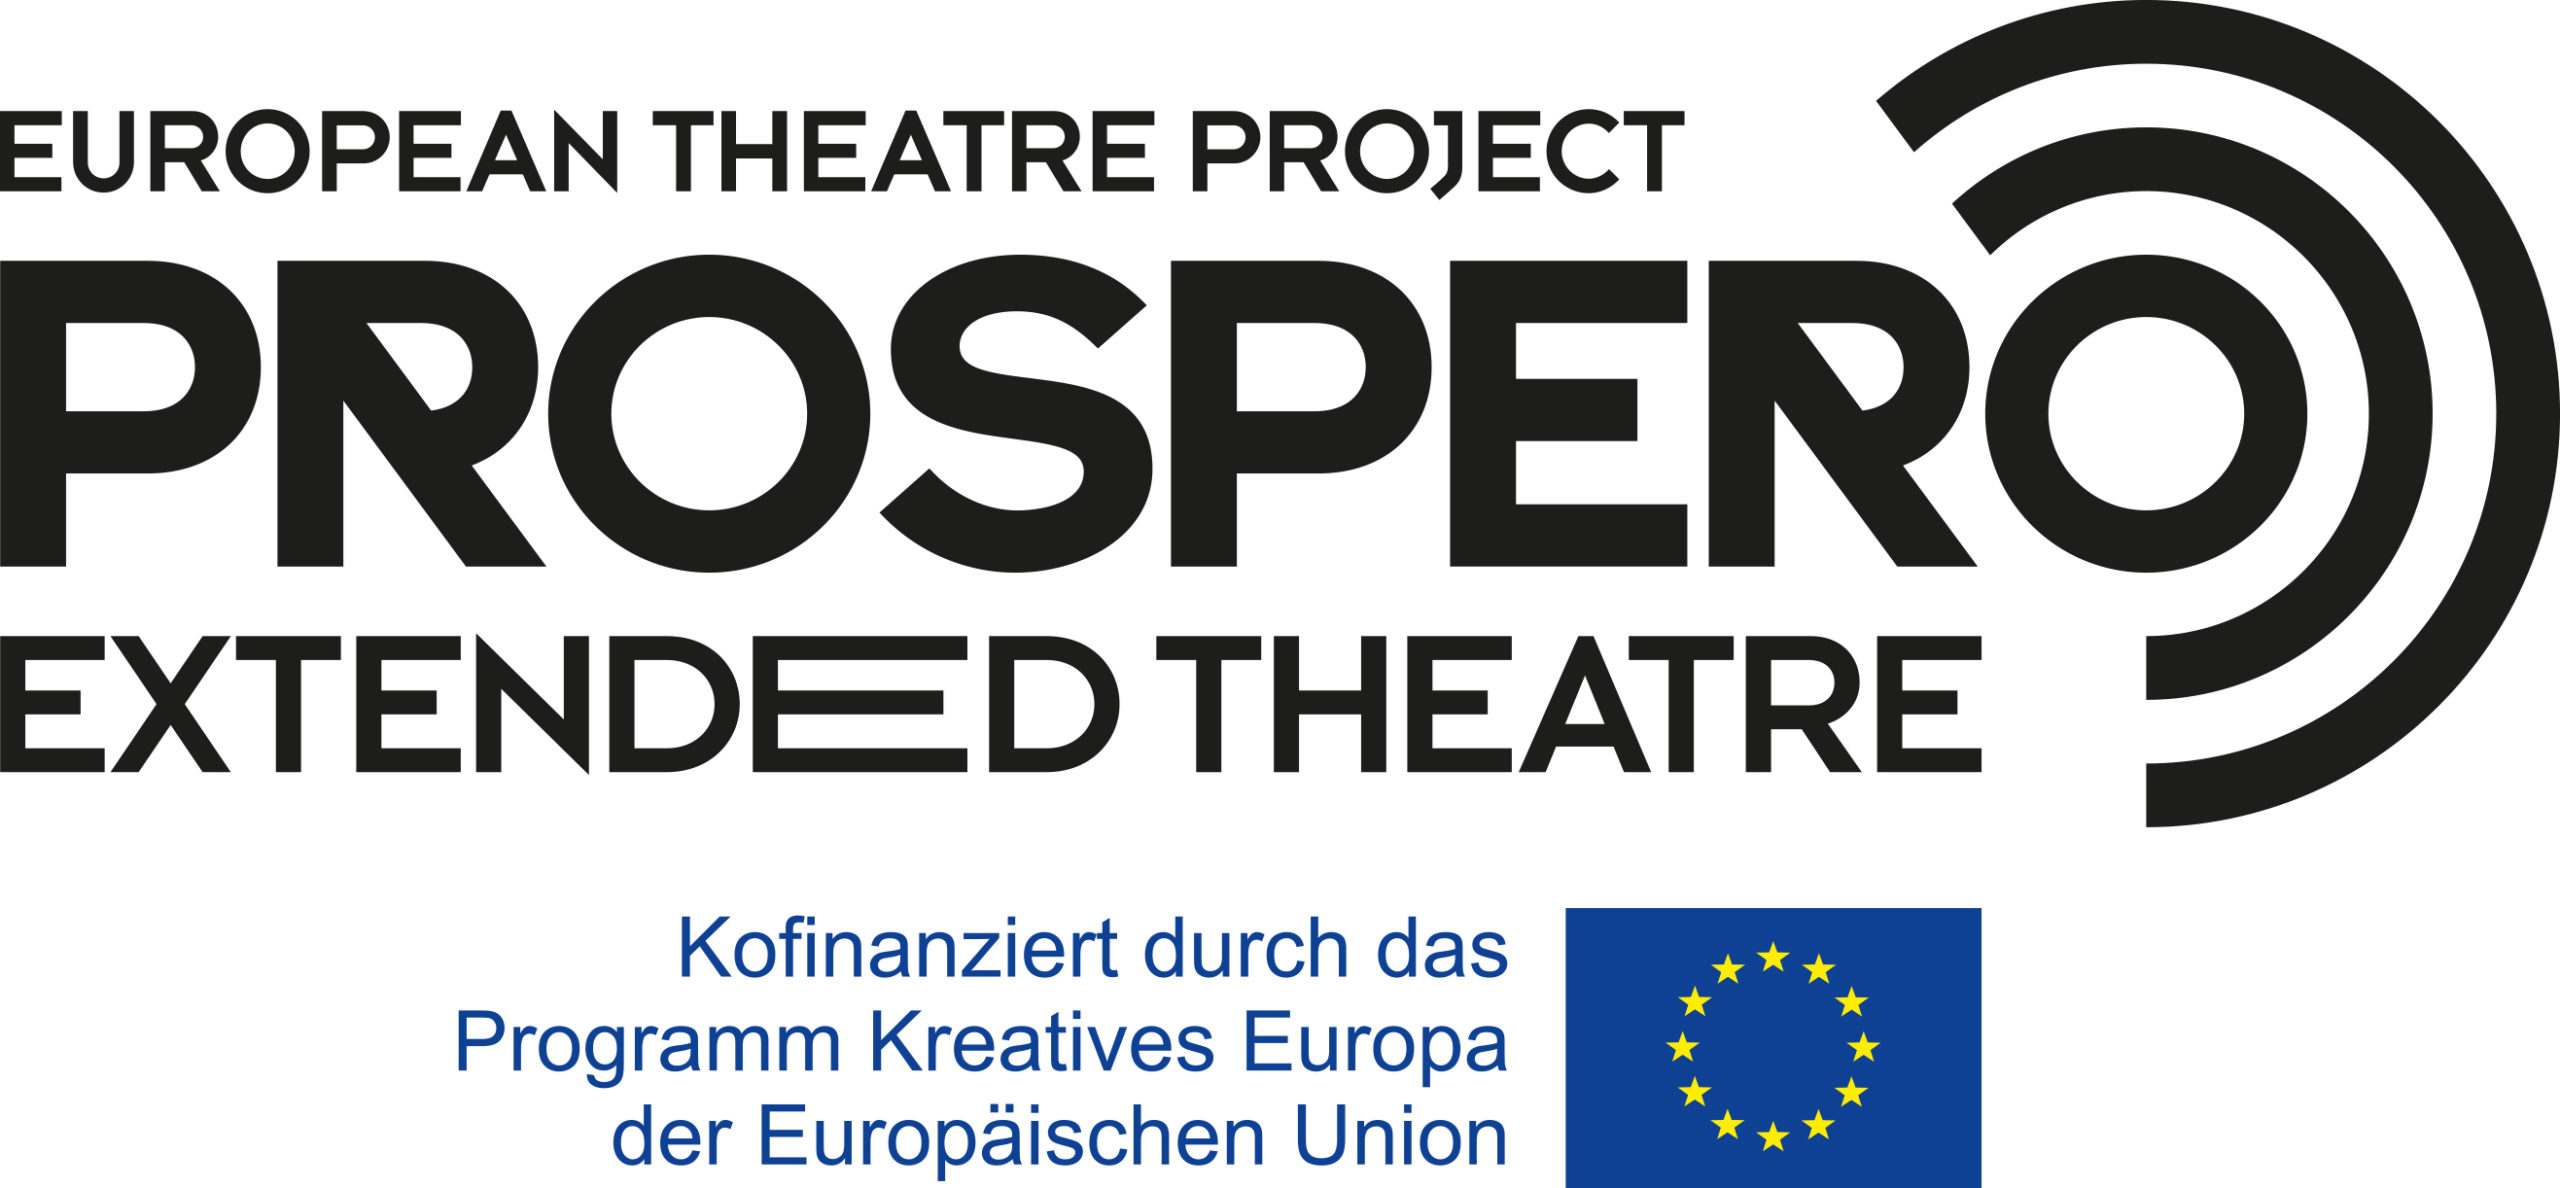 Prospero: 9 Theater aus 9 europäischen Ländern schaffen eine Streamingplattform zur Verbreitung zeitgenössischer Theaterkunst